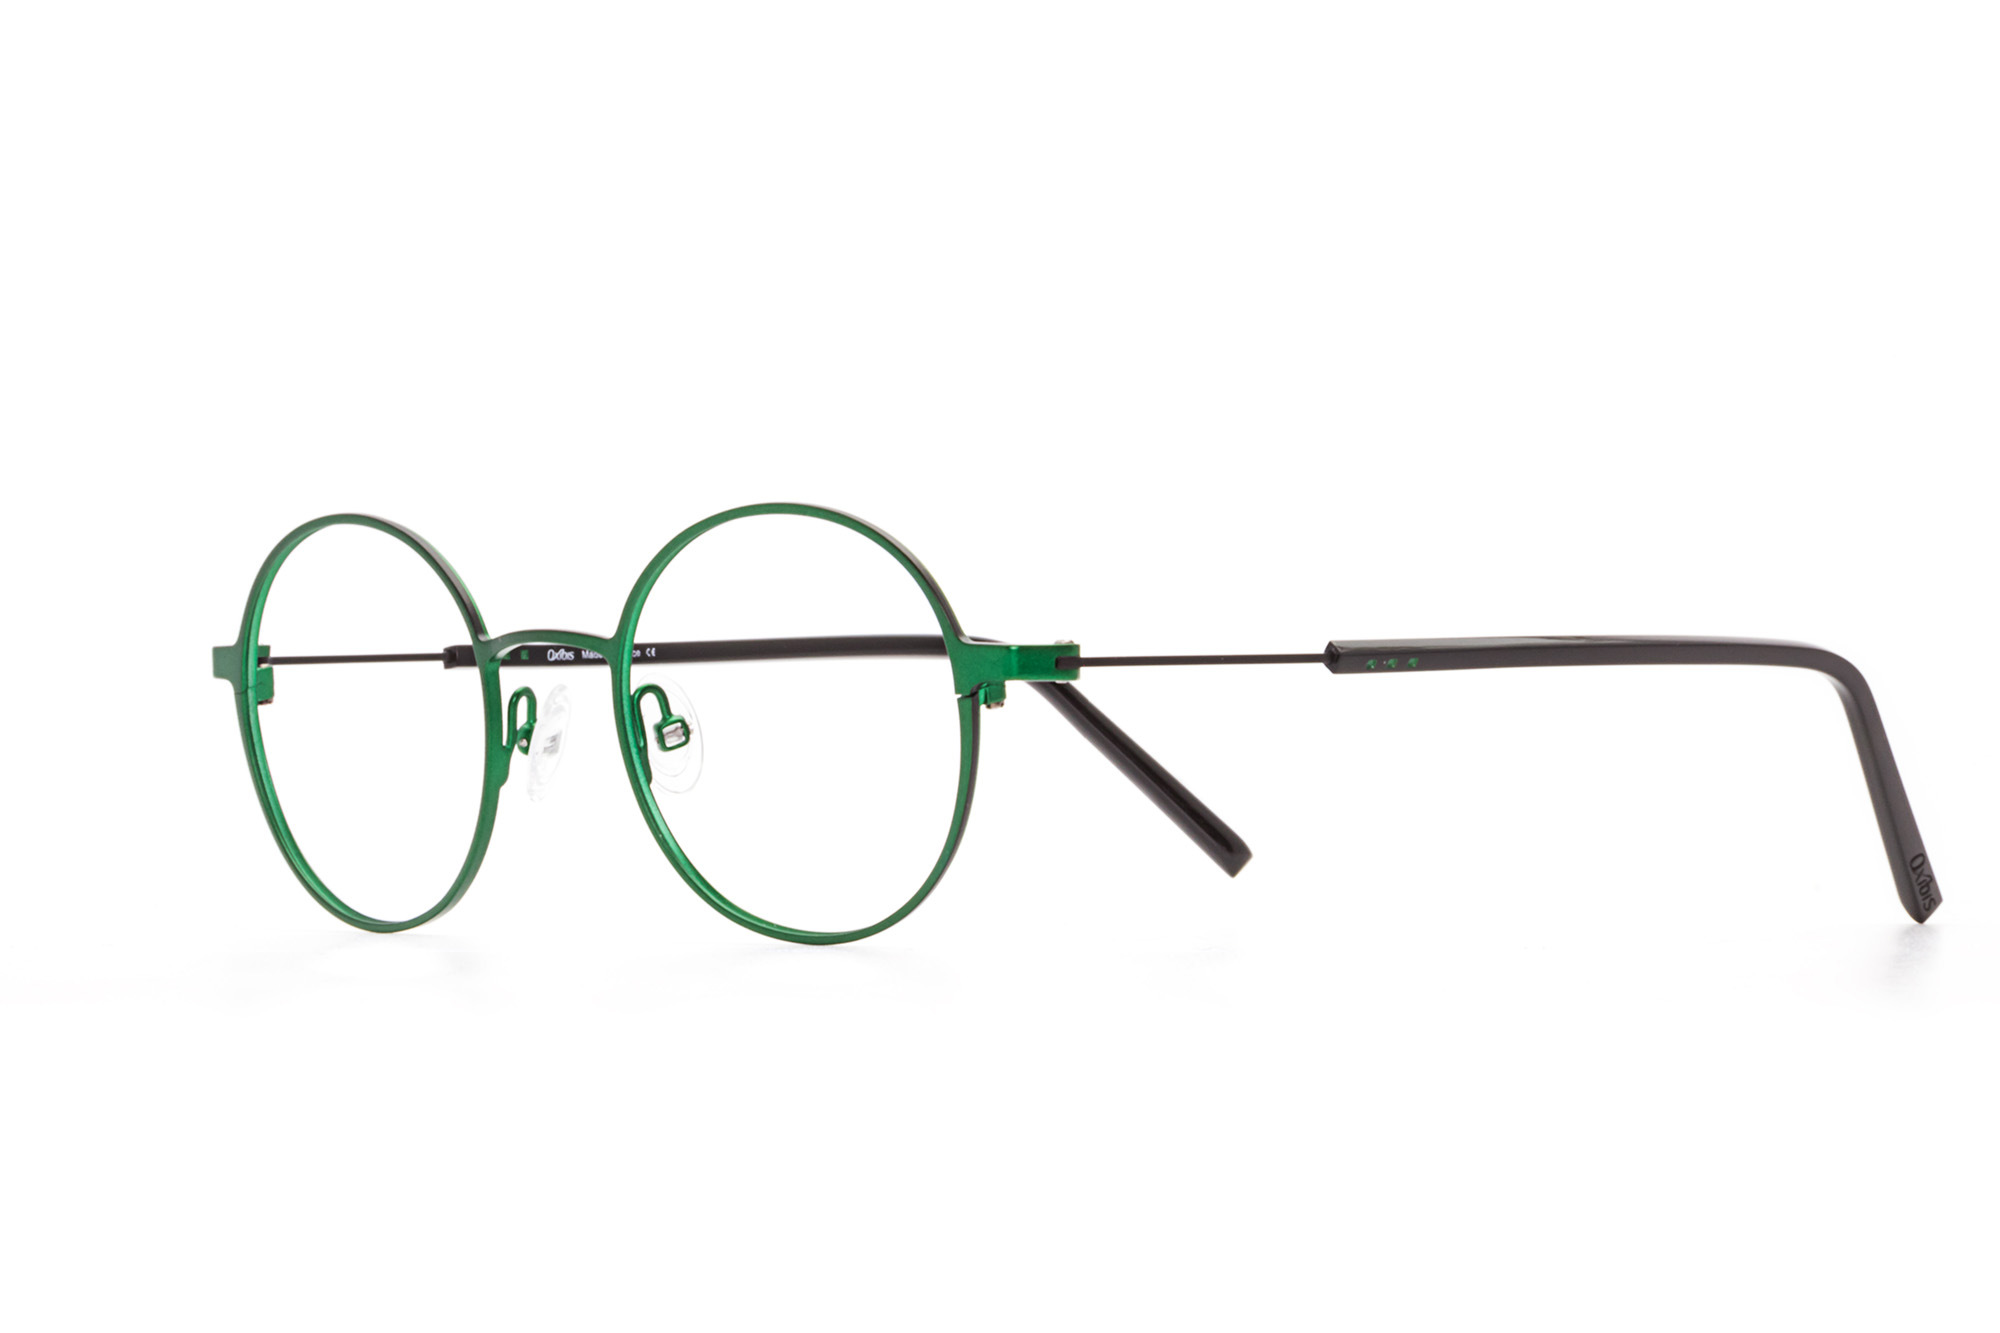 Oxibis Boost 6 BO6C5 47 küçük ekartman siyah ve yeşil renkli yuvarlak model numaralı unisex optik gözlük çerçevesi